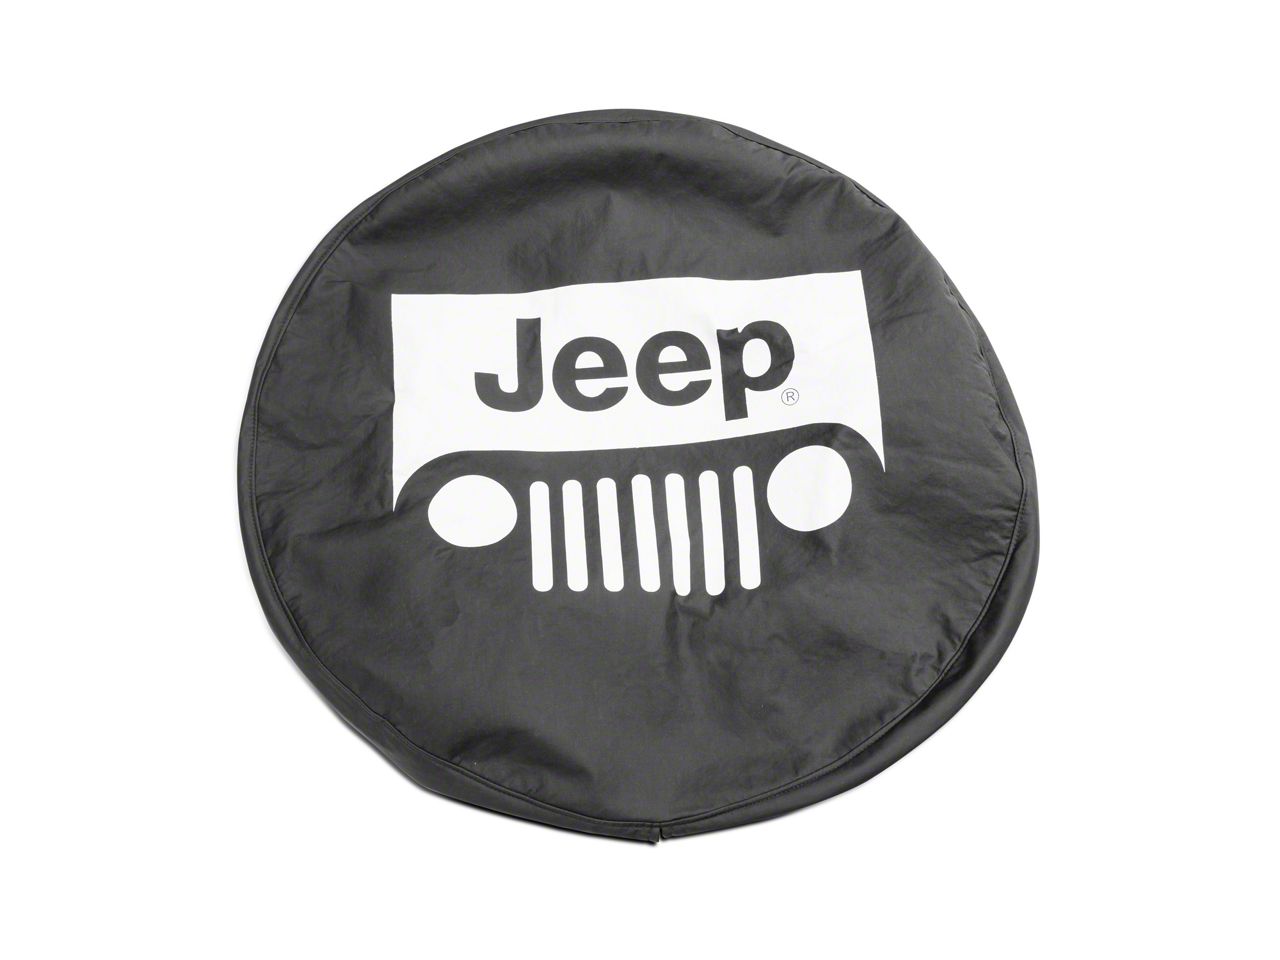 Mopar Jeep Wrangler Jeep Wrangler Grille Logo Spare Tire Cover J129629  (66-18 Jeep CJ5, CJ7, Wrangler YJ, TJ  JK) Free Shipping